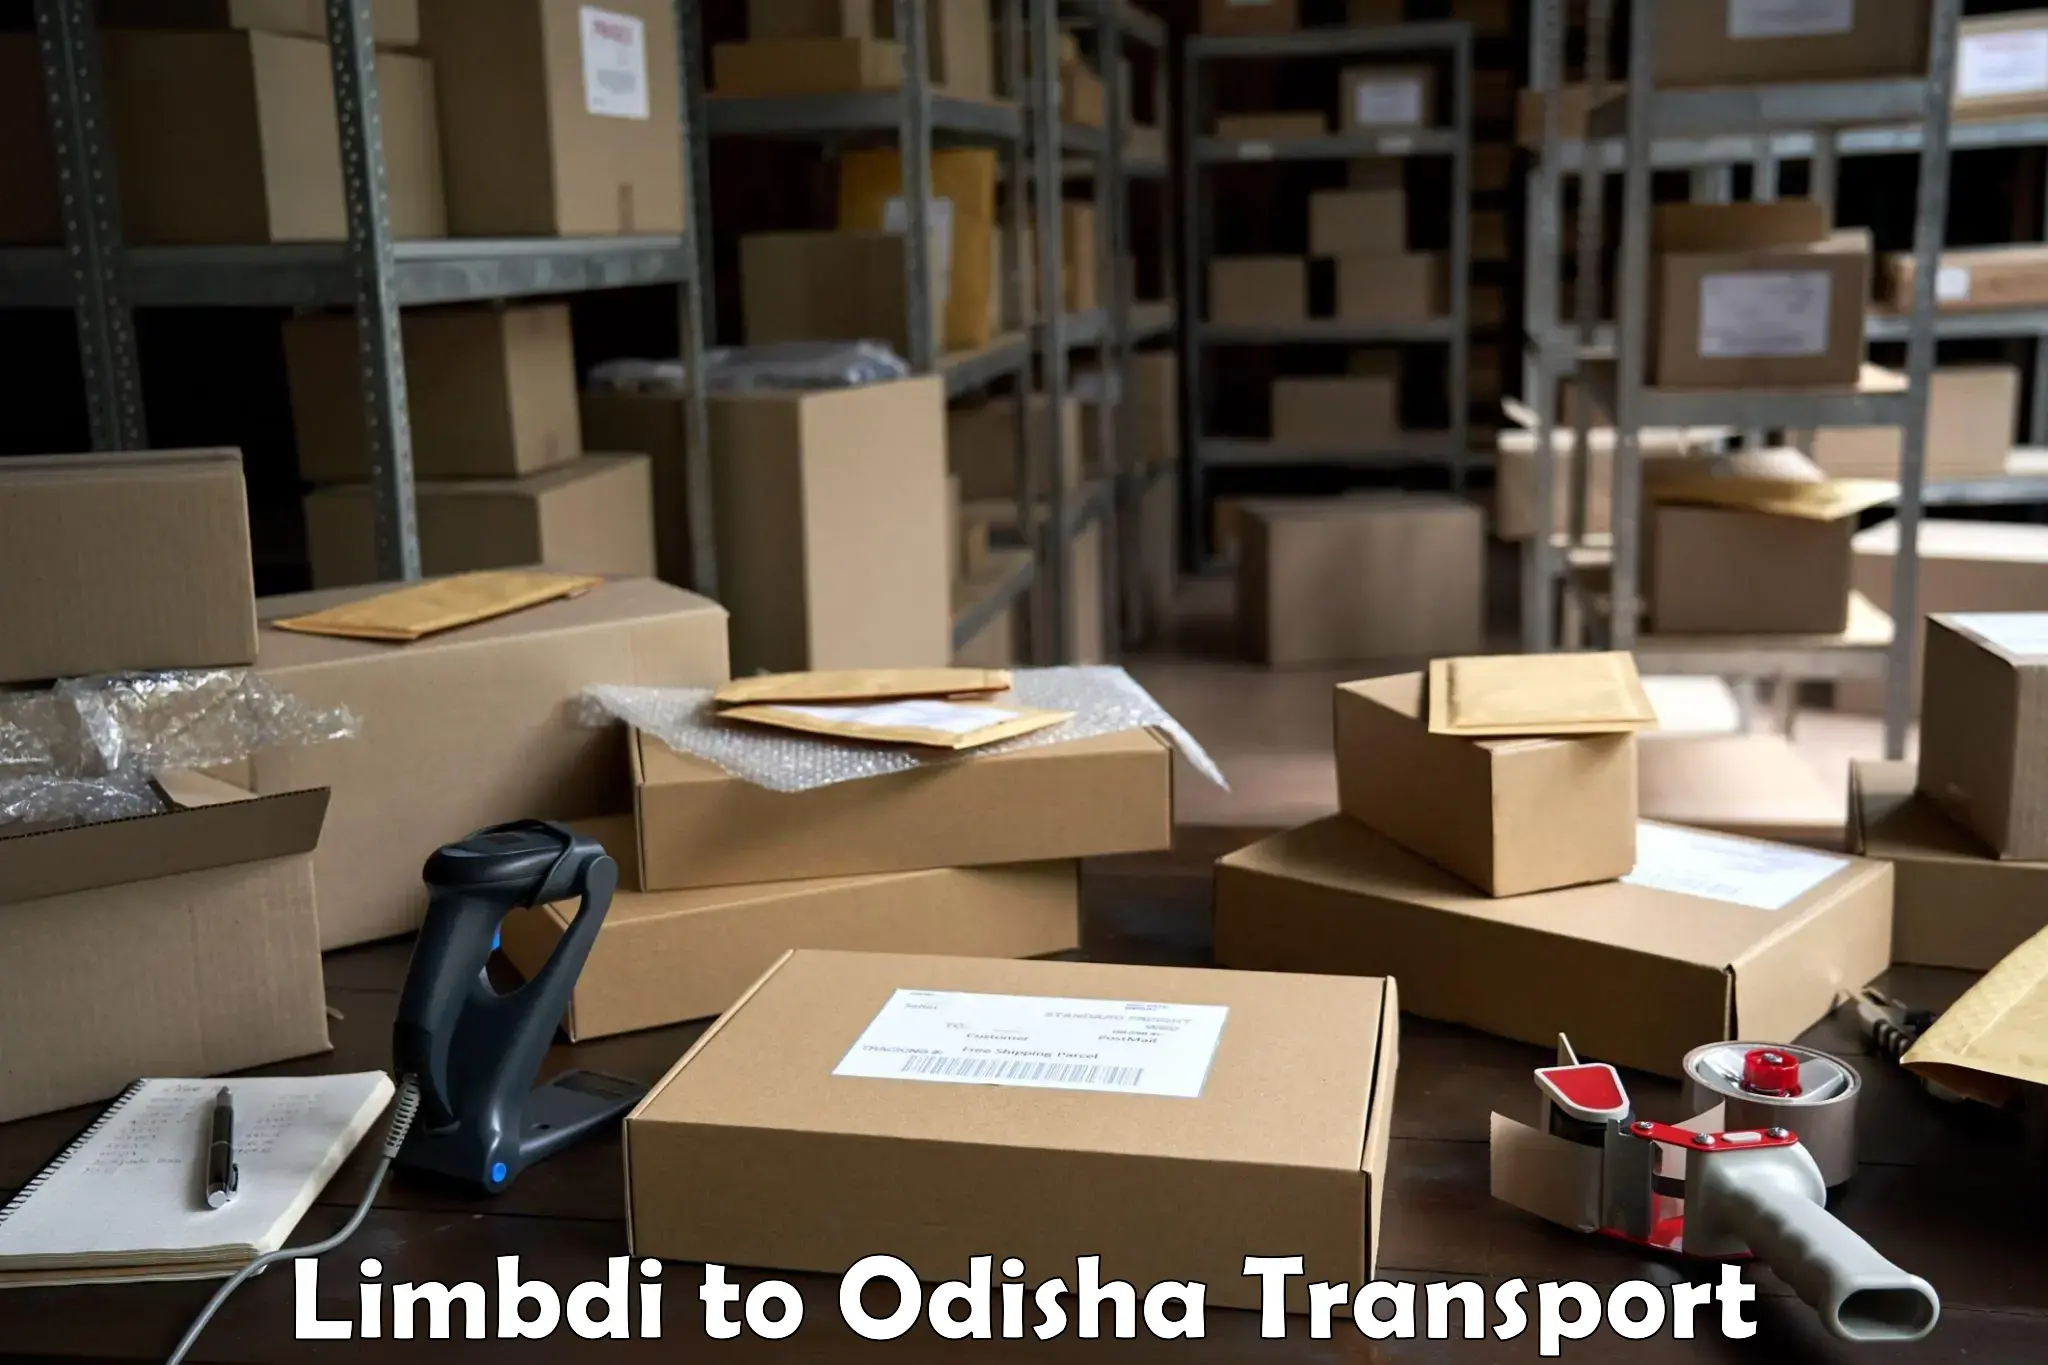 Bike shipping service Limbdi to Odisha